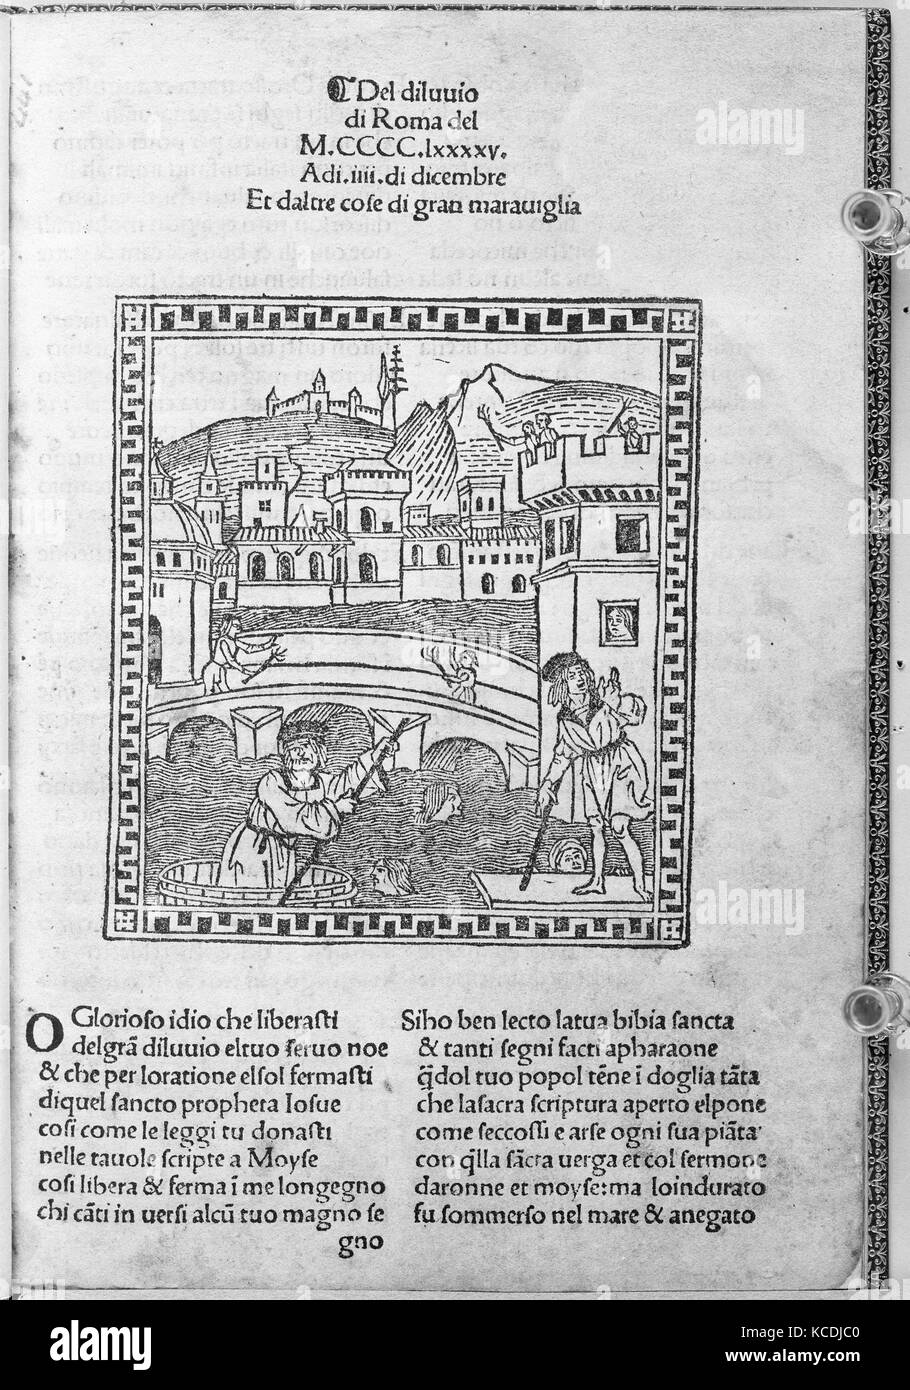 Del Diluvio di Roma, 1495, Woodcut, Overall: 8 3/16 x 5 9/16 x 1/4 in.  (20.8 x 14.2 x 0.6 cm), Books Stock Photo - Alamy